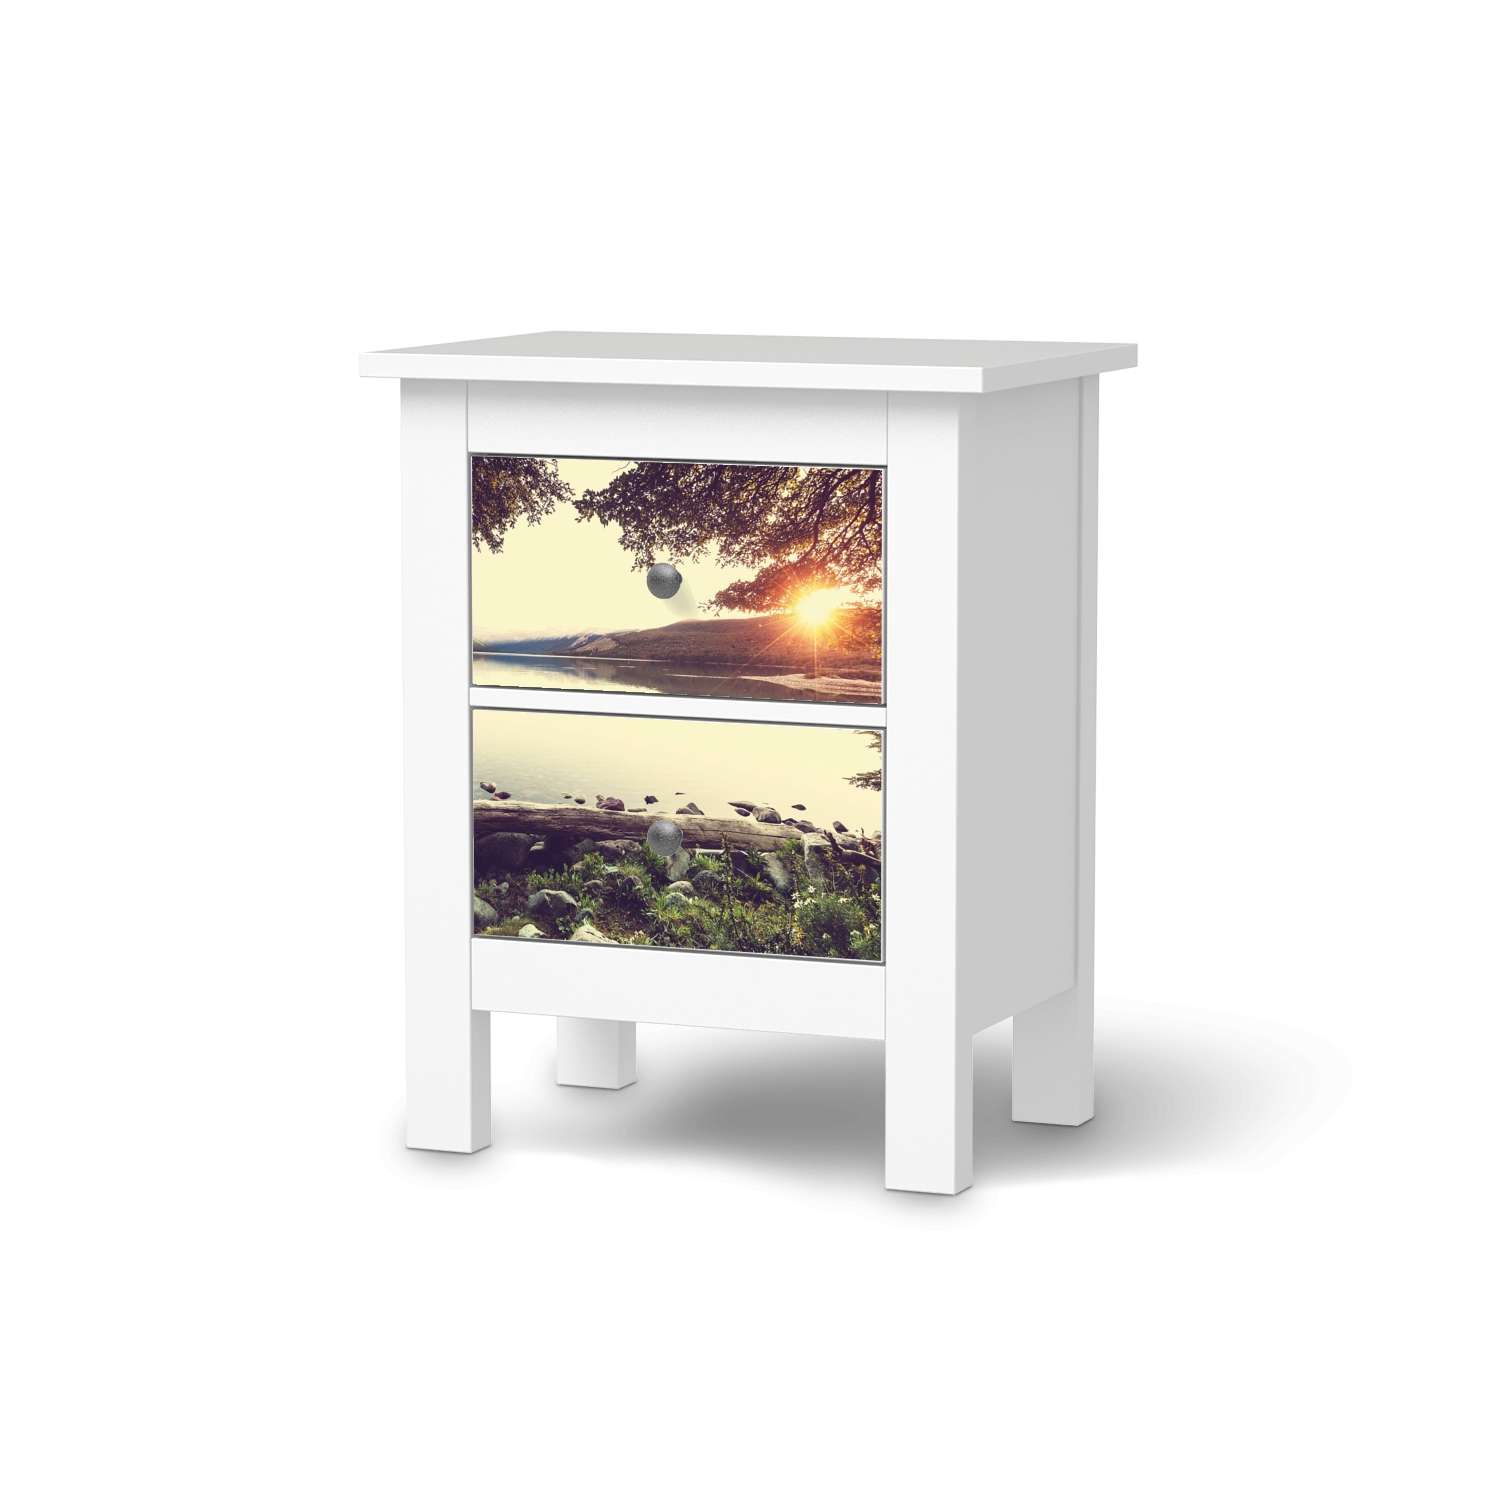 Selbstklebende Folie IKEA Hemnes Kommode 2 Schubladen - Design: Seaside Dreams von creatisto